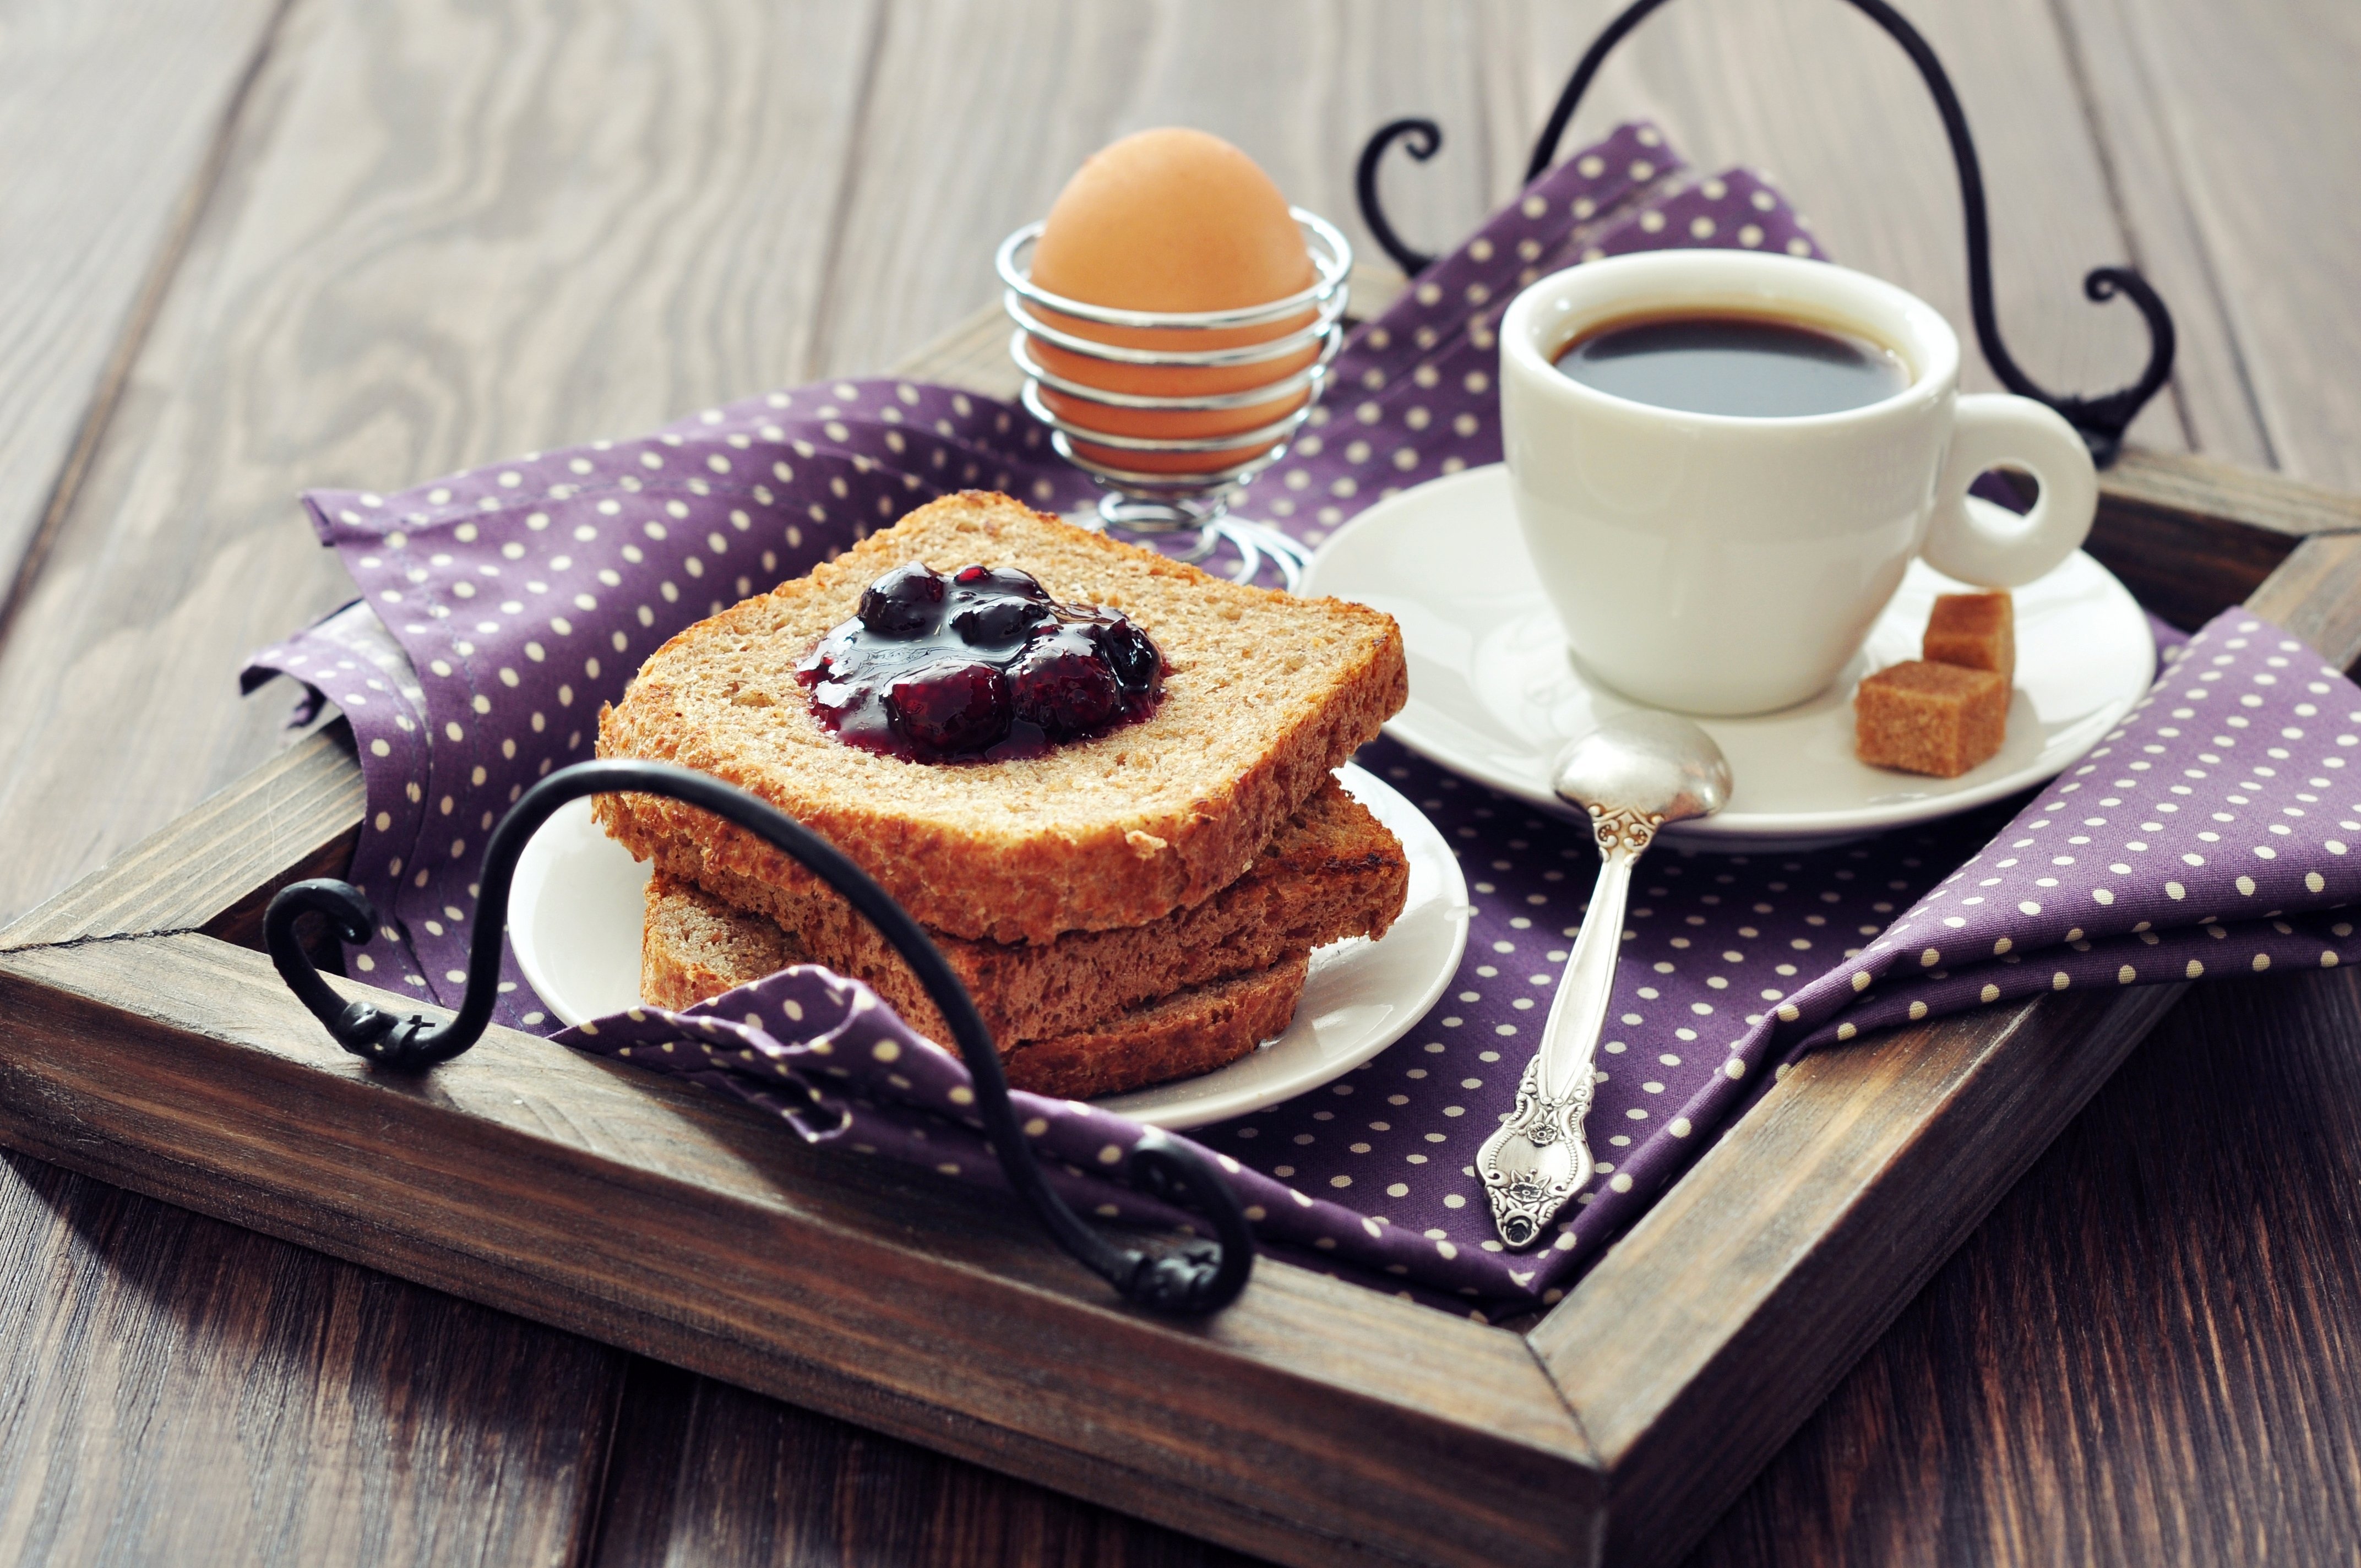 Приходи на завтрак. Завтрак с кофе. Доброе утро кофе. Красивый завтрак с кофе. Кофе и пирожное.